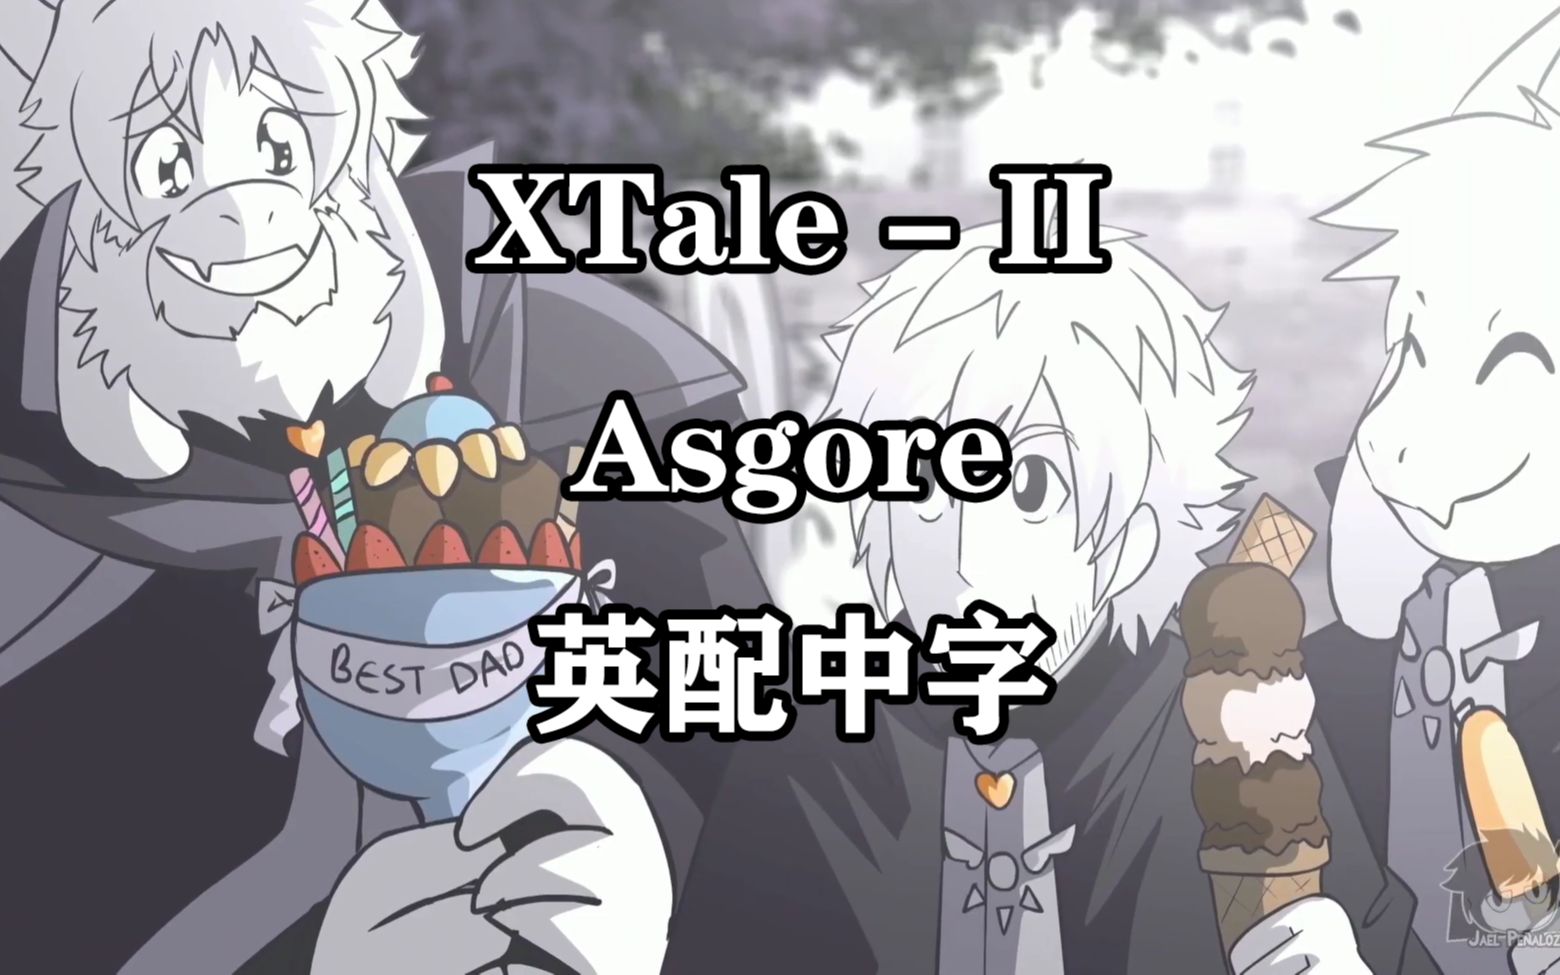 【XTale英文配音 汉化】XTALE II - Asgore